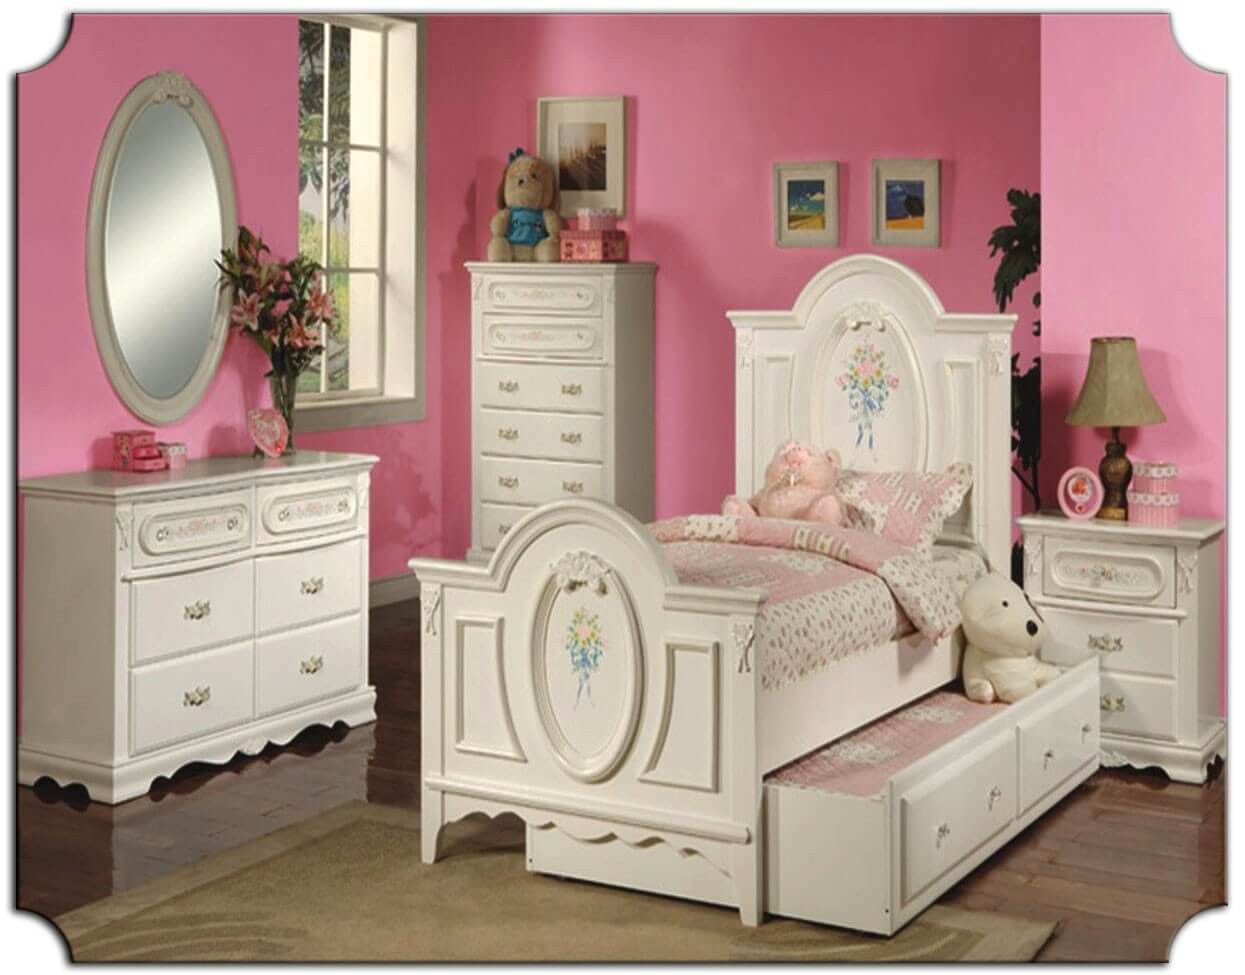 Kids Bedroom Set
 The Best Kids Bedroom Furniture Sets Best Interior Decor